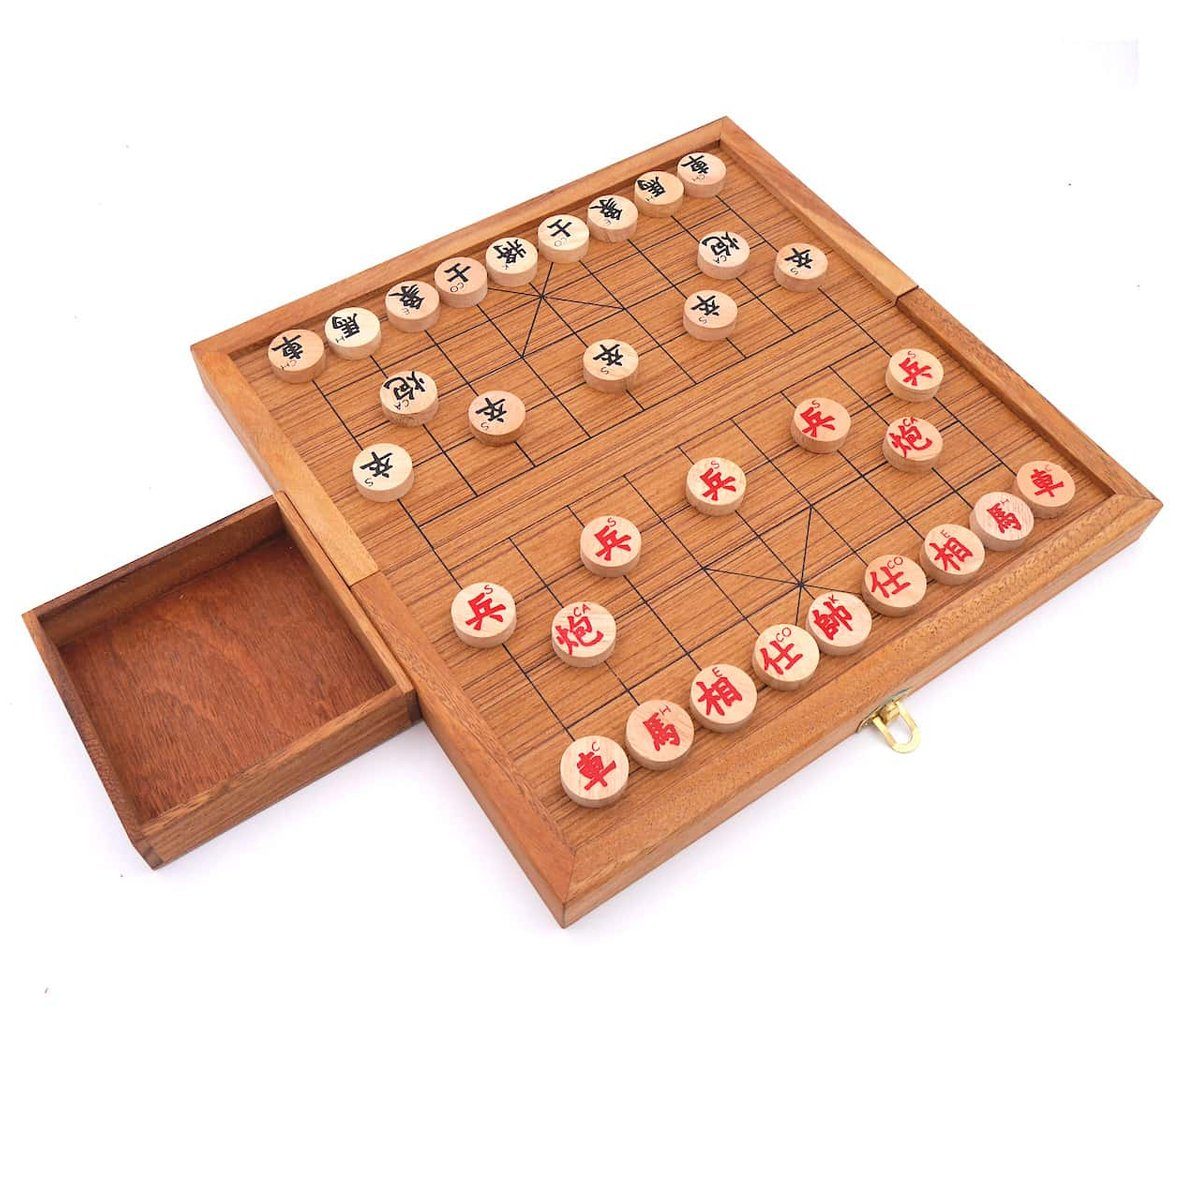 ROMBOL Denkspiele originalen Set chinesisches Strategiespiel Spiel, Holzspiel - mit Xiangqi Holzscheiben, Schachspiel,